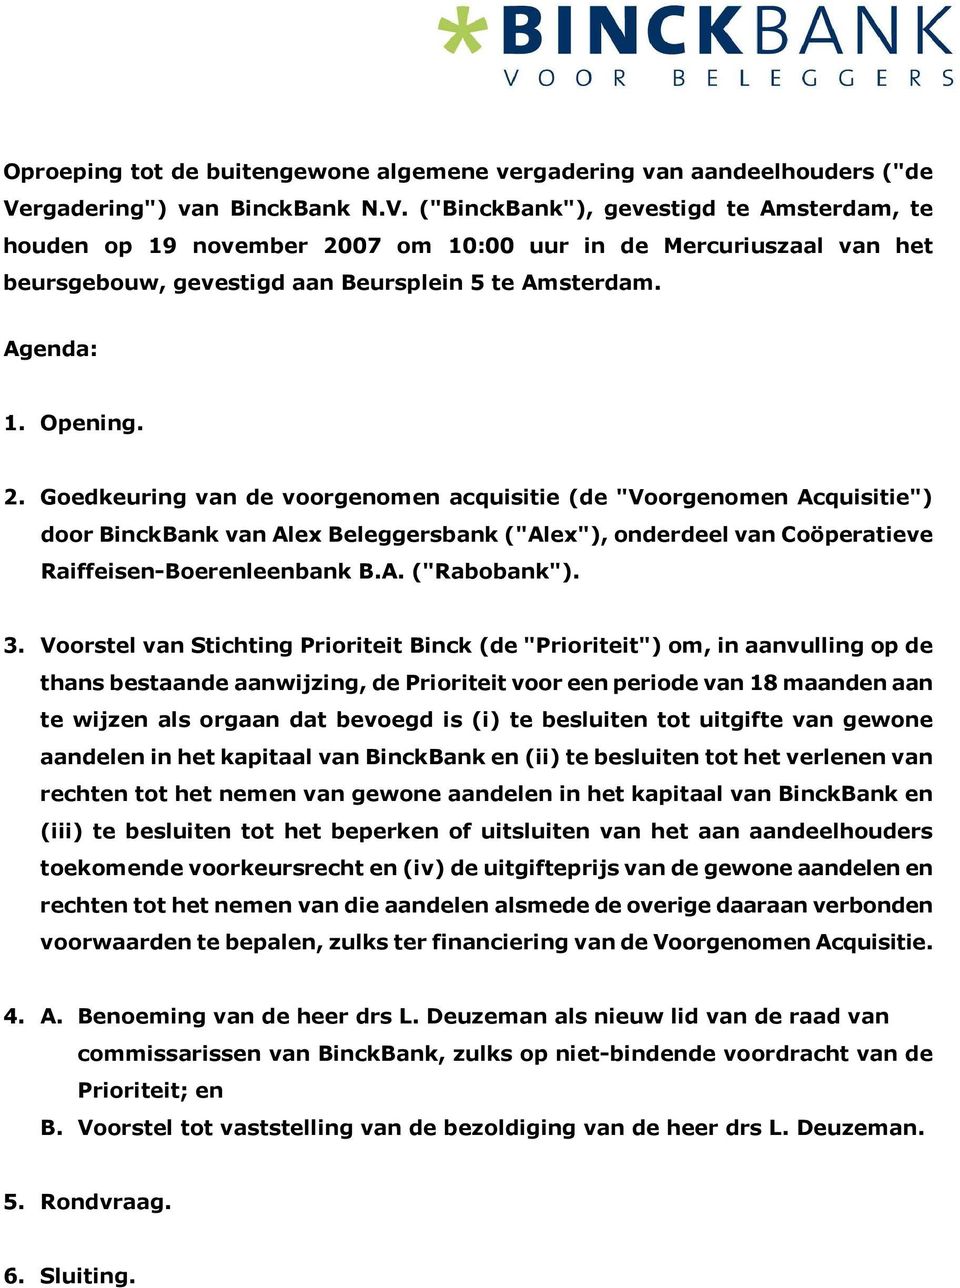 Agenda: 1. Opening. 2. Goedkeuring van de voorgenomen acquisitie (de "Voorgenomen Acquisitie") door BinckBank van Alex Beleggersbank ("Alex"), onderdeel van Coöperatieve Raiffeisen-Boerenleenbank B.A. ("Rabobank").